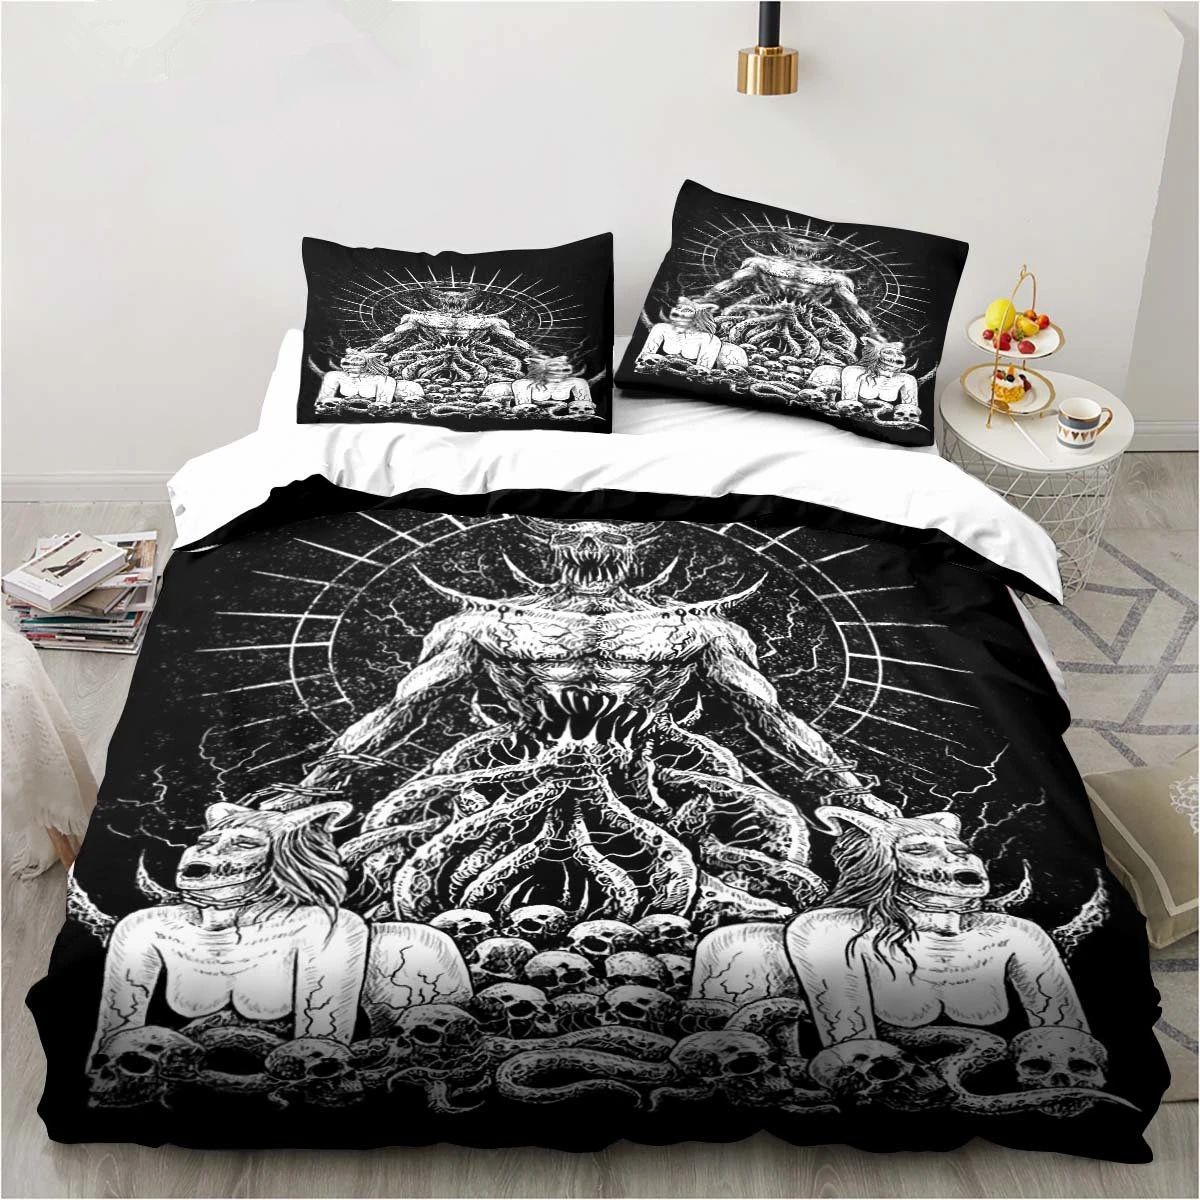 

Baphomet Satan Demon Evil Duvet Cover Set Horror Evil Monster Bedding Set Full King Size Comforter Cover Christmas Navidad Gift